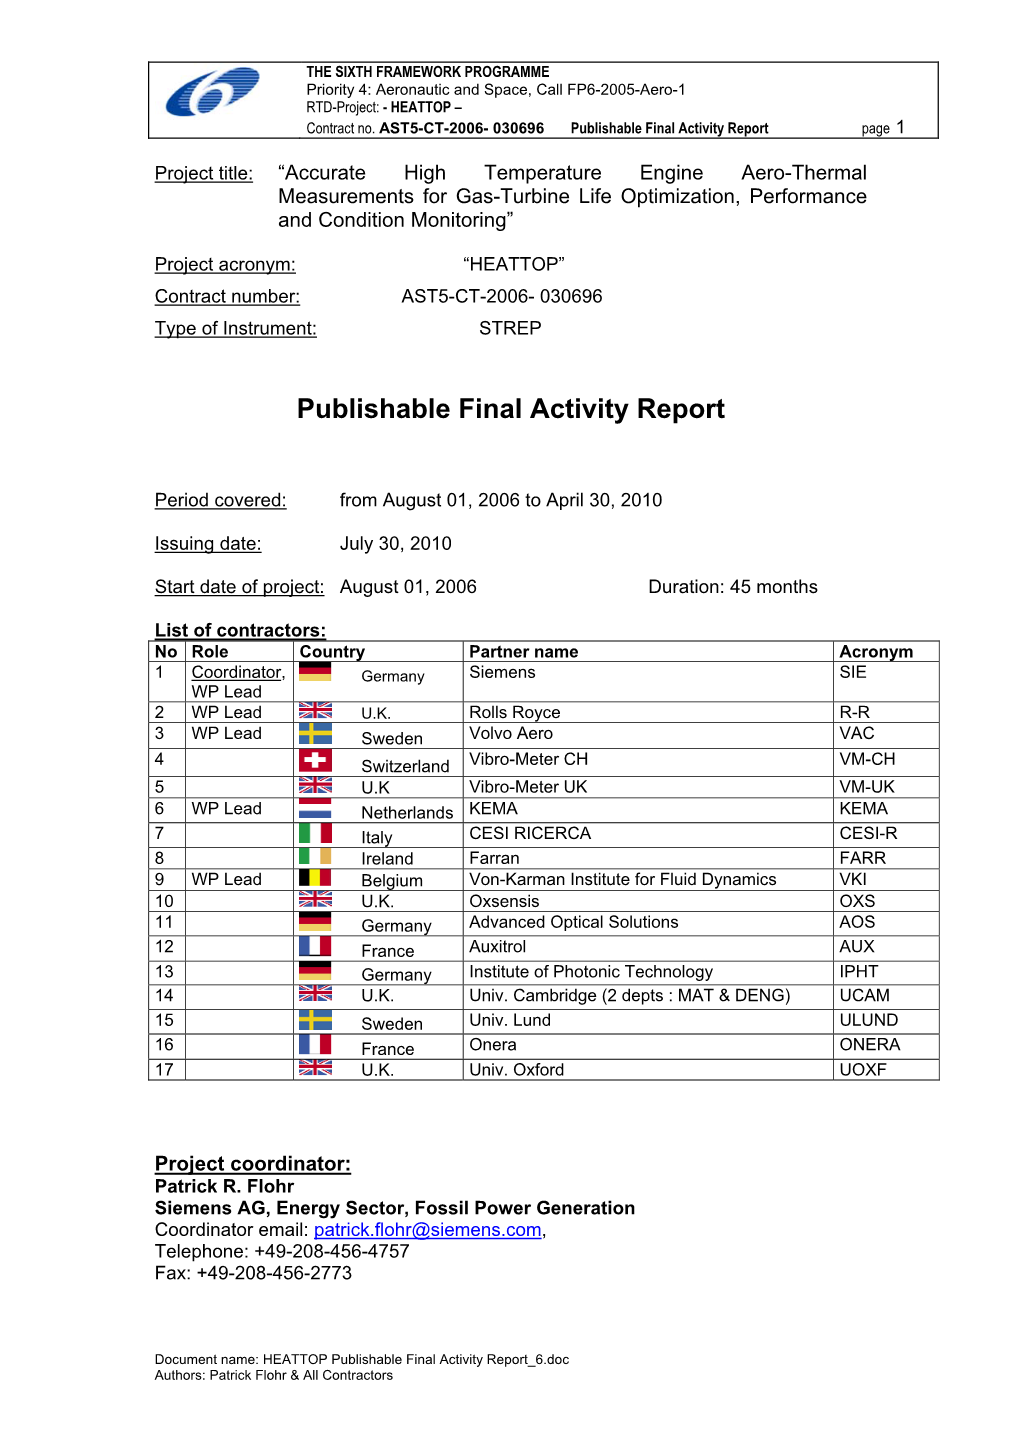 Publishable Final Activity Report Page 1